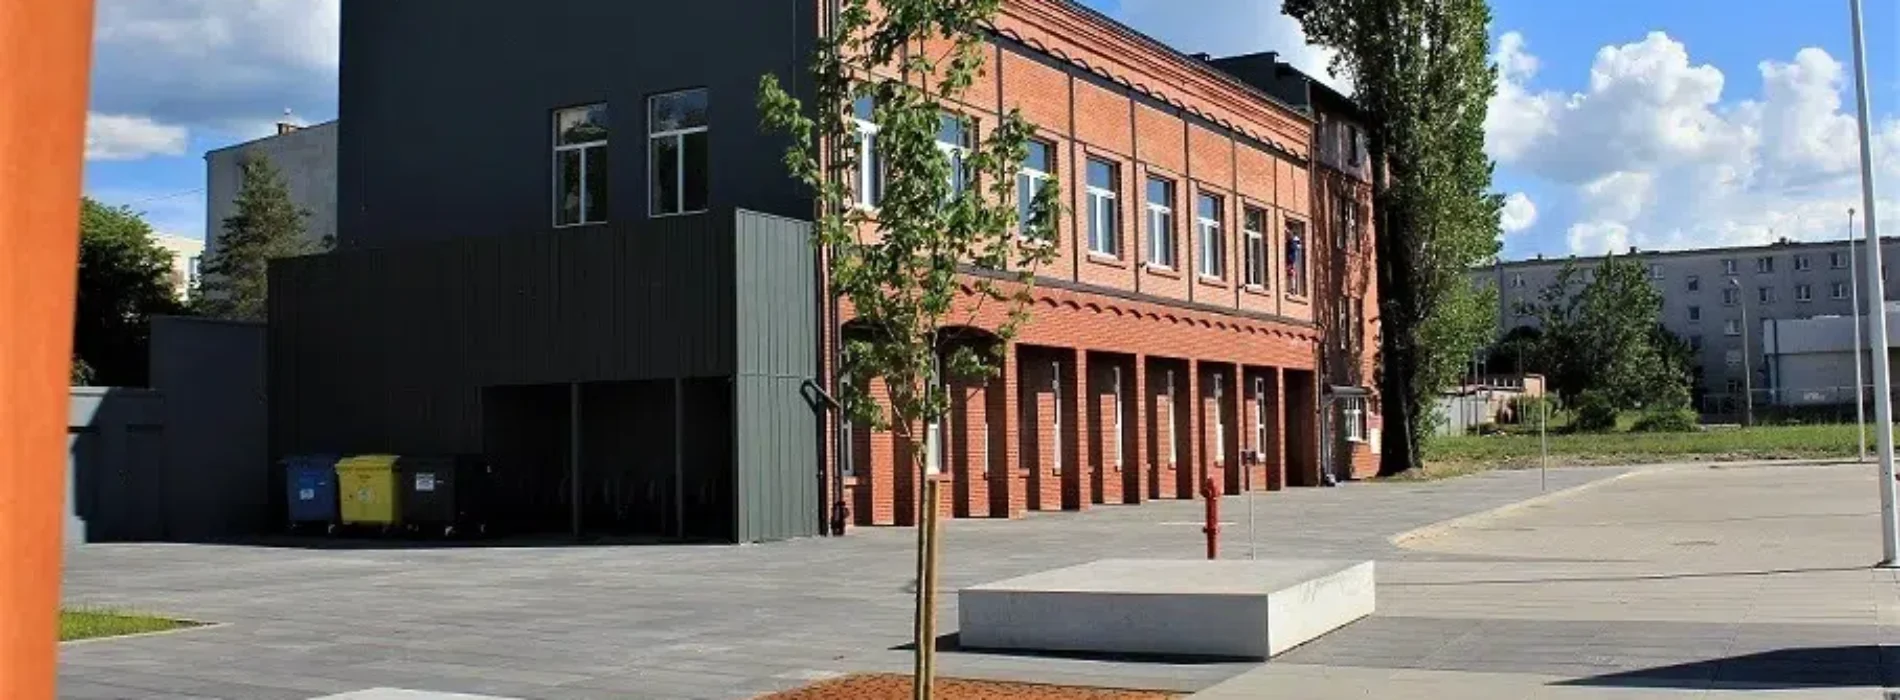 Jak betonowe płyty tarasowe odmieniają przestrzeń przydomową we Wrocławiu